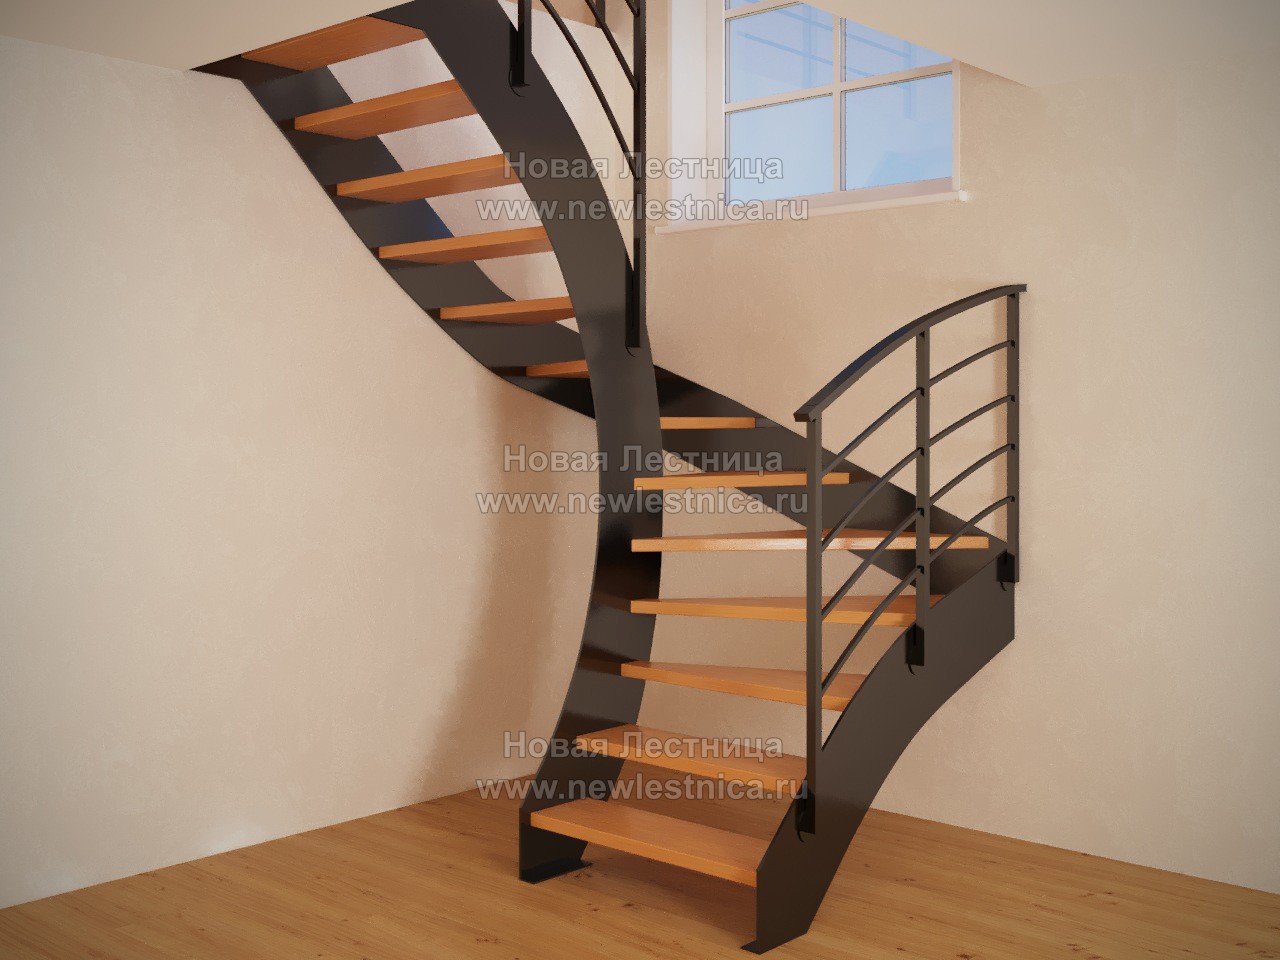 Эксклюзивная лестница на металлических тетивах (фото)